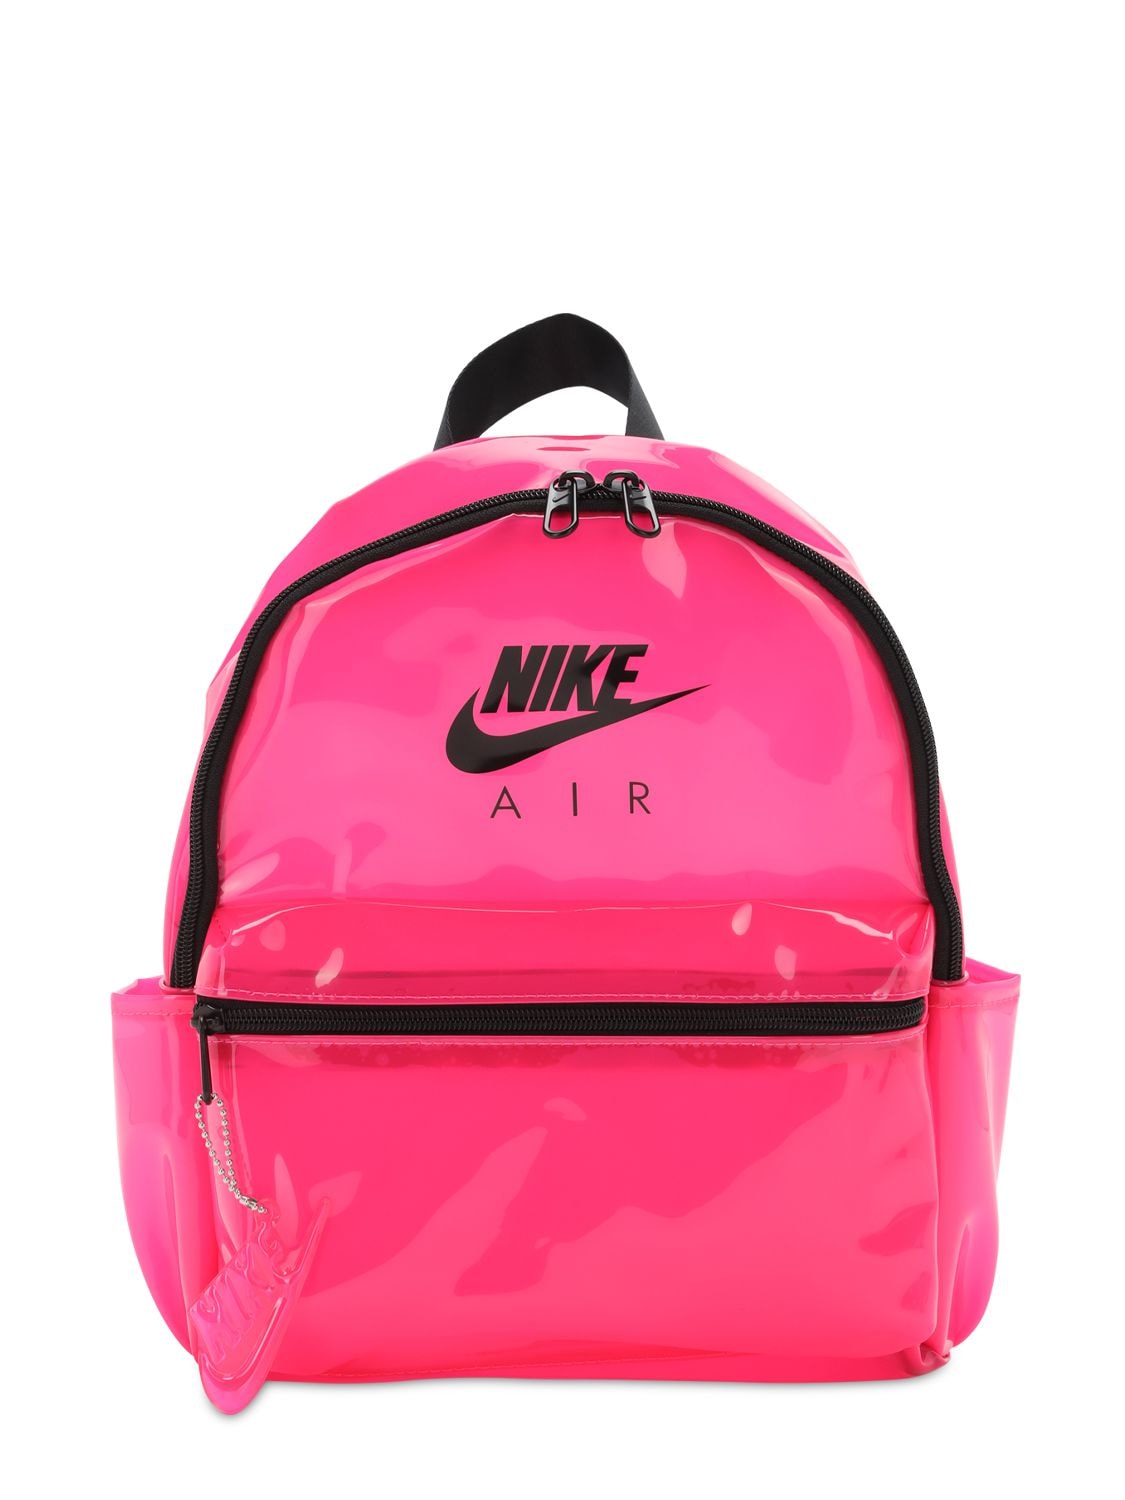 nike shoulder bag pink